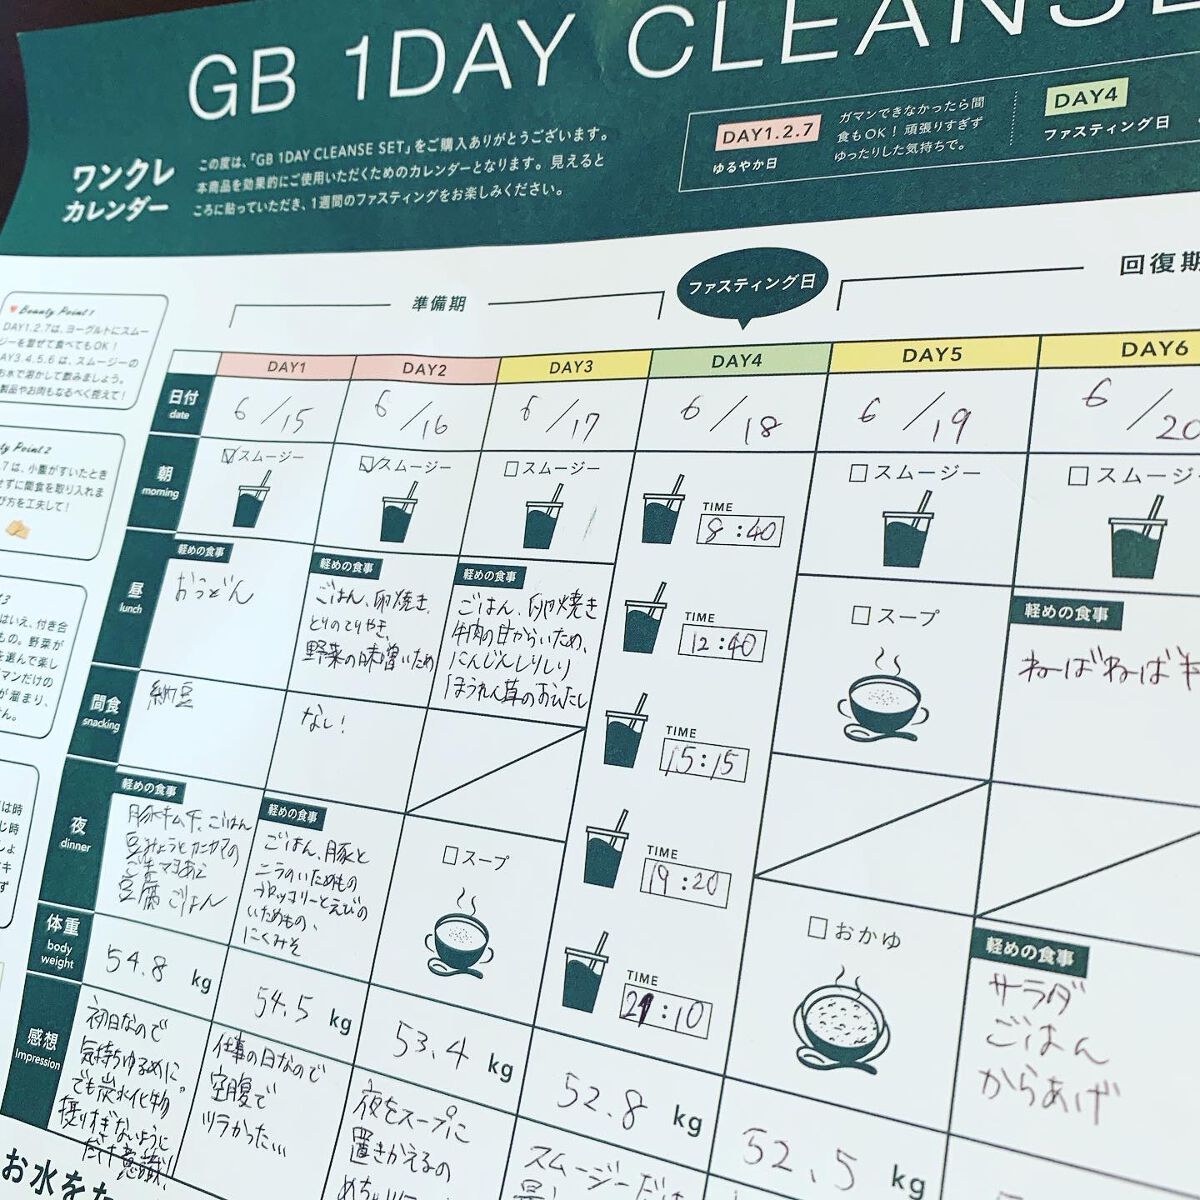 試してみた】GB 1DAY CLEANSE SET／GREEN BROTHERS | LIPS